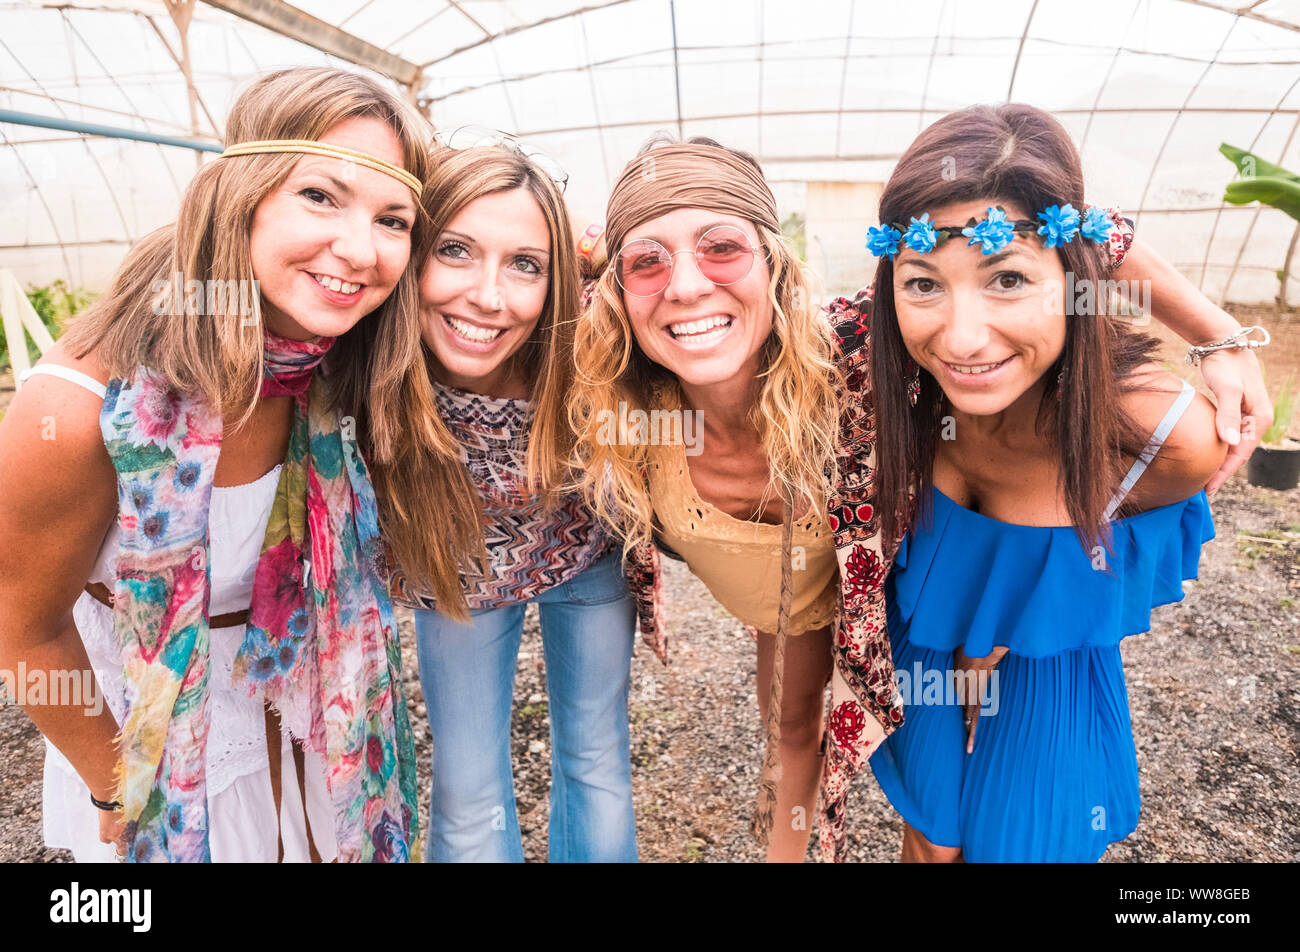 Cuatro jóvenes y bellas mujeres alegres en un selfie abrazando juntos en amistad, coloridos vestidos y ropa hippie en libertad y estilo sonrisas y concepto personas caucásicas Fotografía de